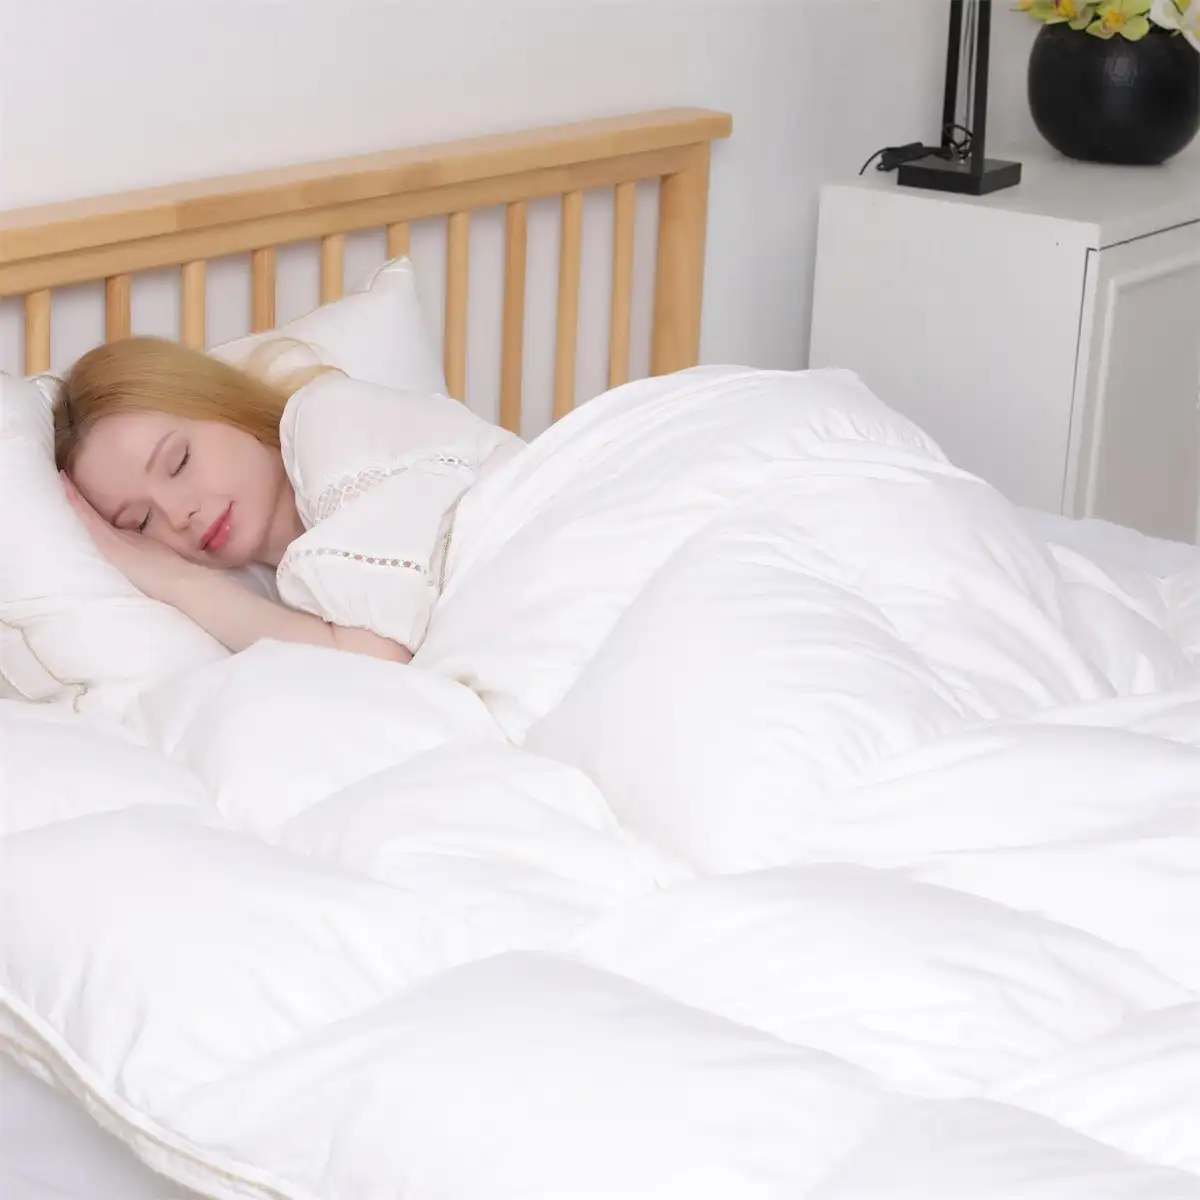 Handmade New Design billige Bettdecke aus 100% Baumwolle für das Heim hotel